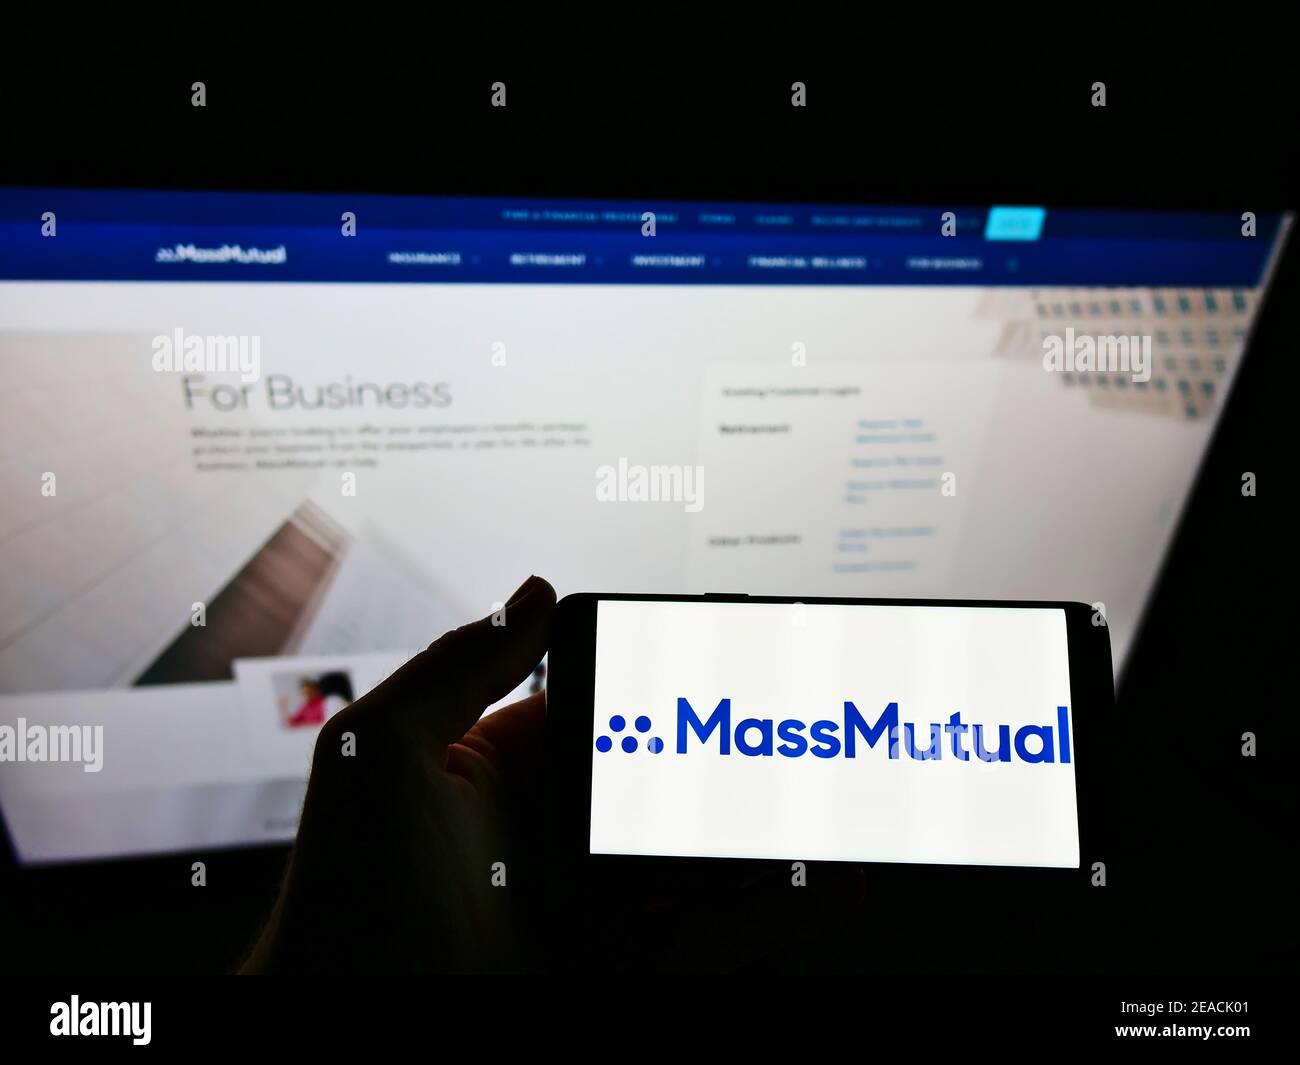 Personne tenant un téléphone portable avec le logo d'affaires de la compagnie d'assurance américaine MassMutual sur l'écran en face de la page Web. Concentrez-vous sur l'affichage du téléphone portable. Banque D'Images